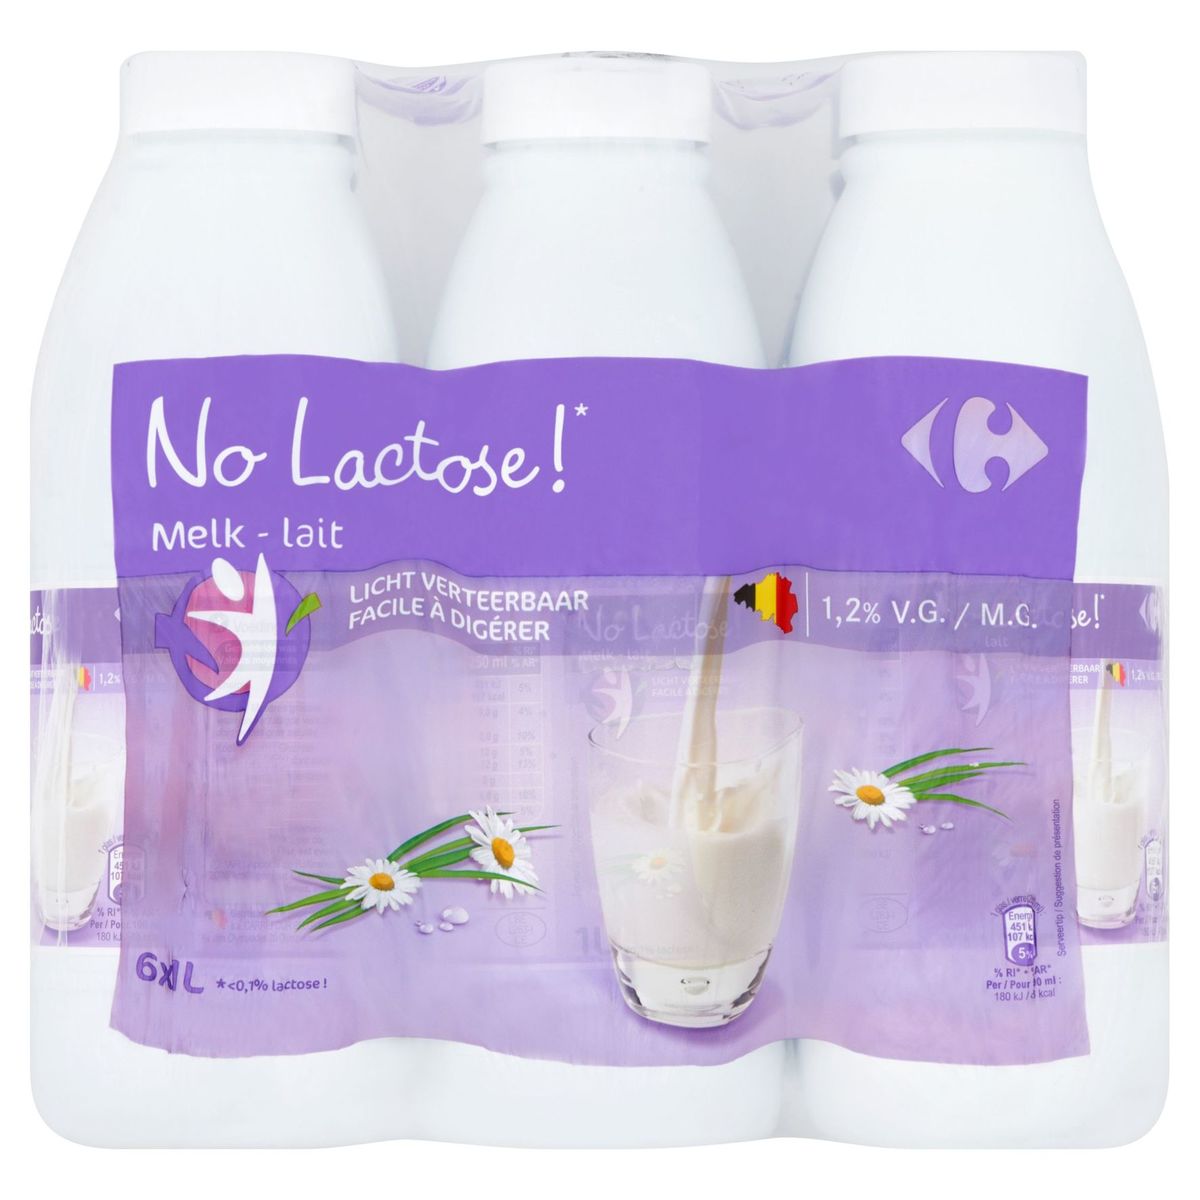 Carrefour No Lactose Melk 1.2% V.G. 6 x 1 L